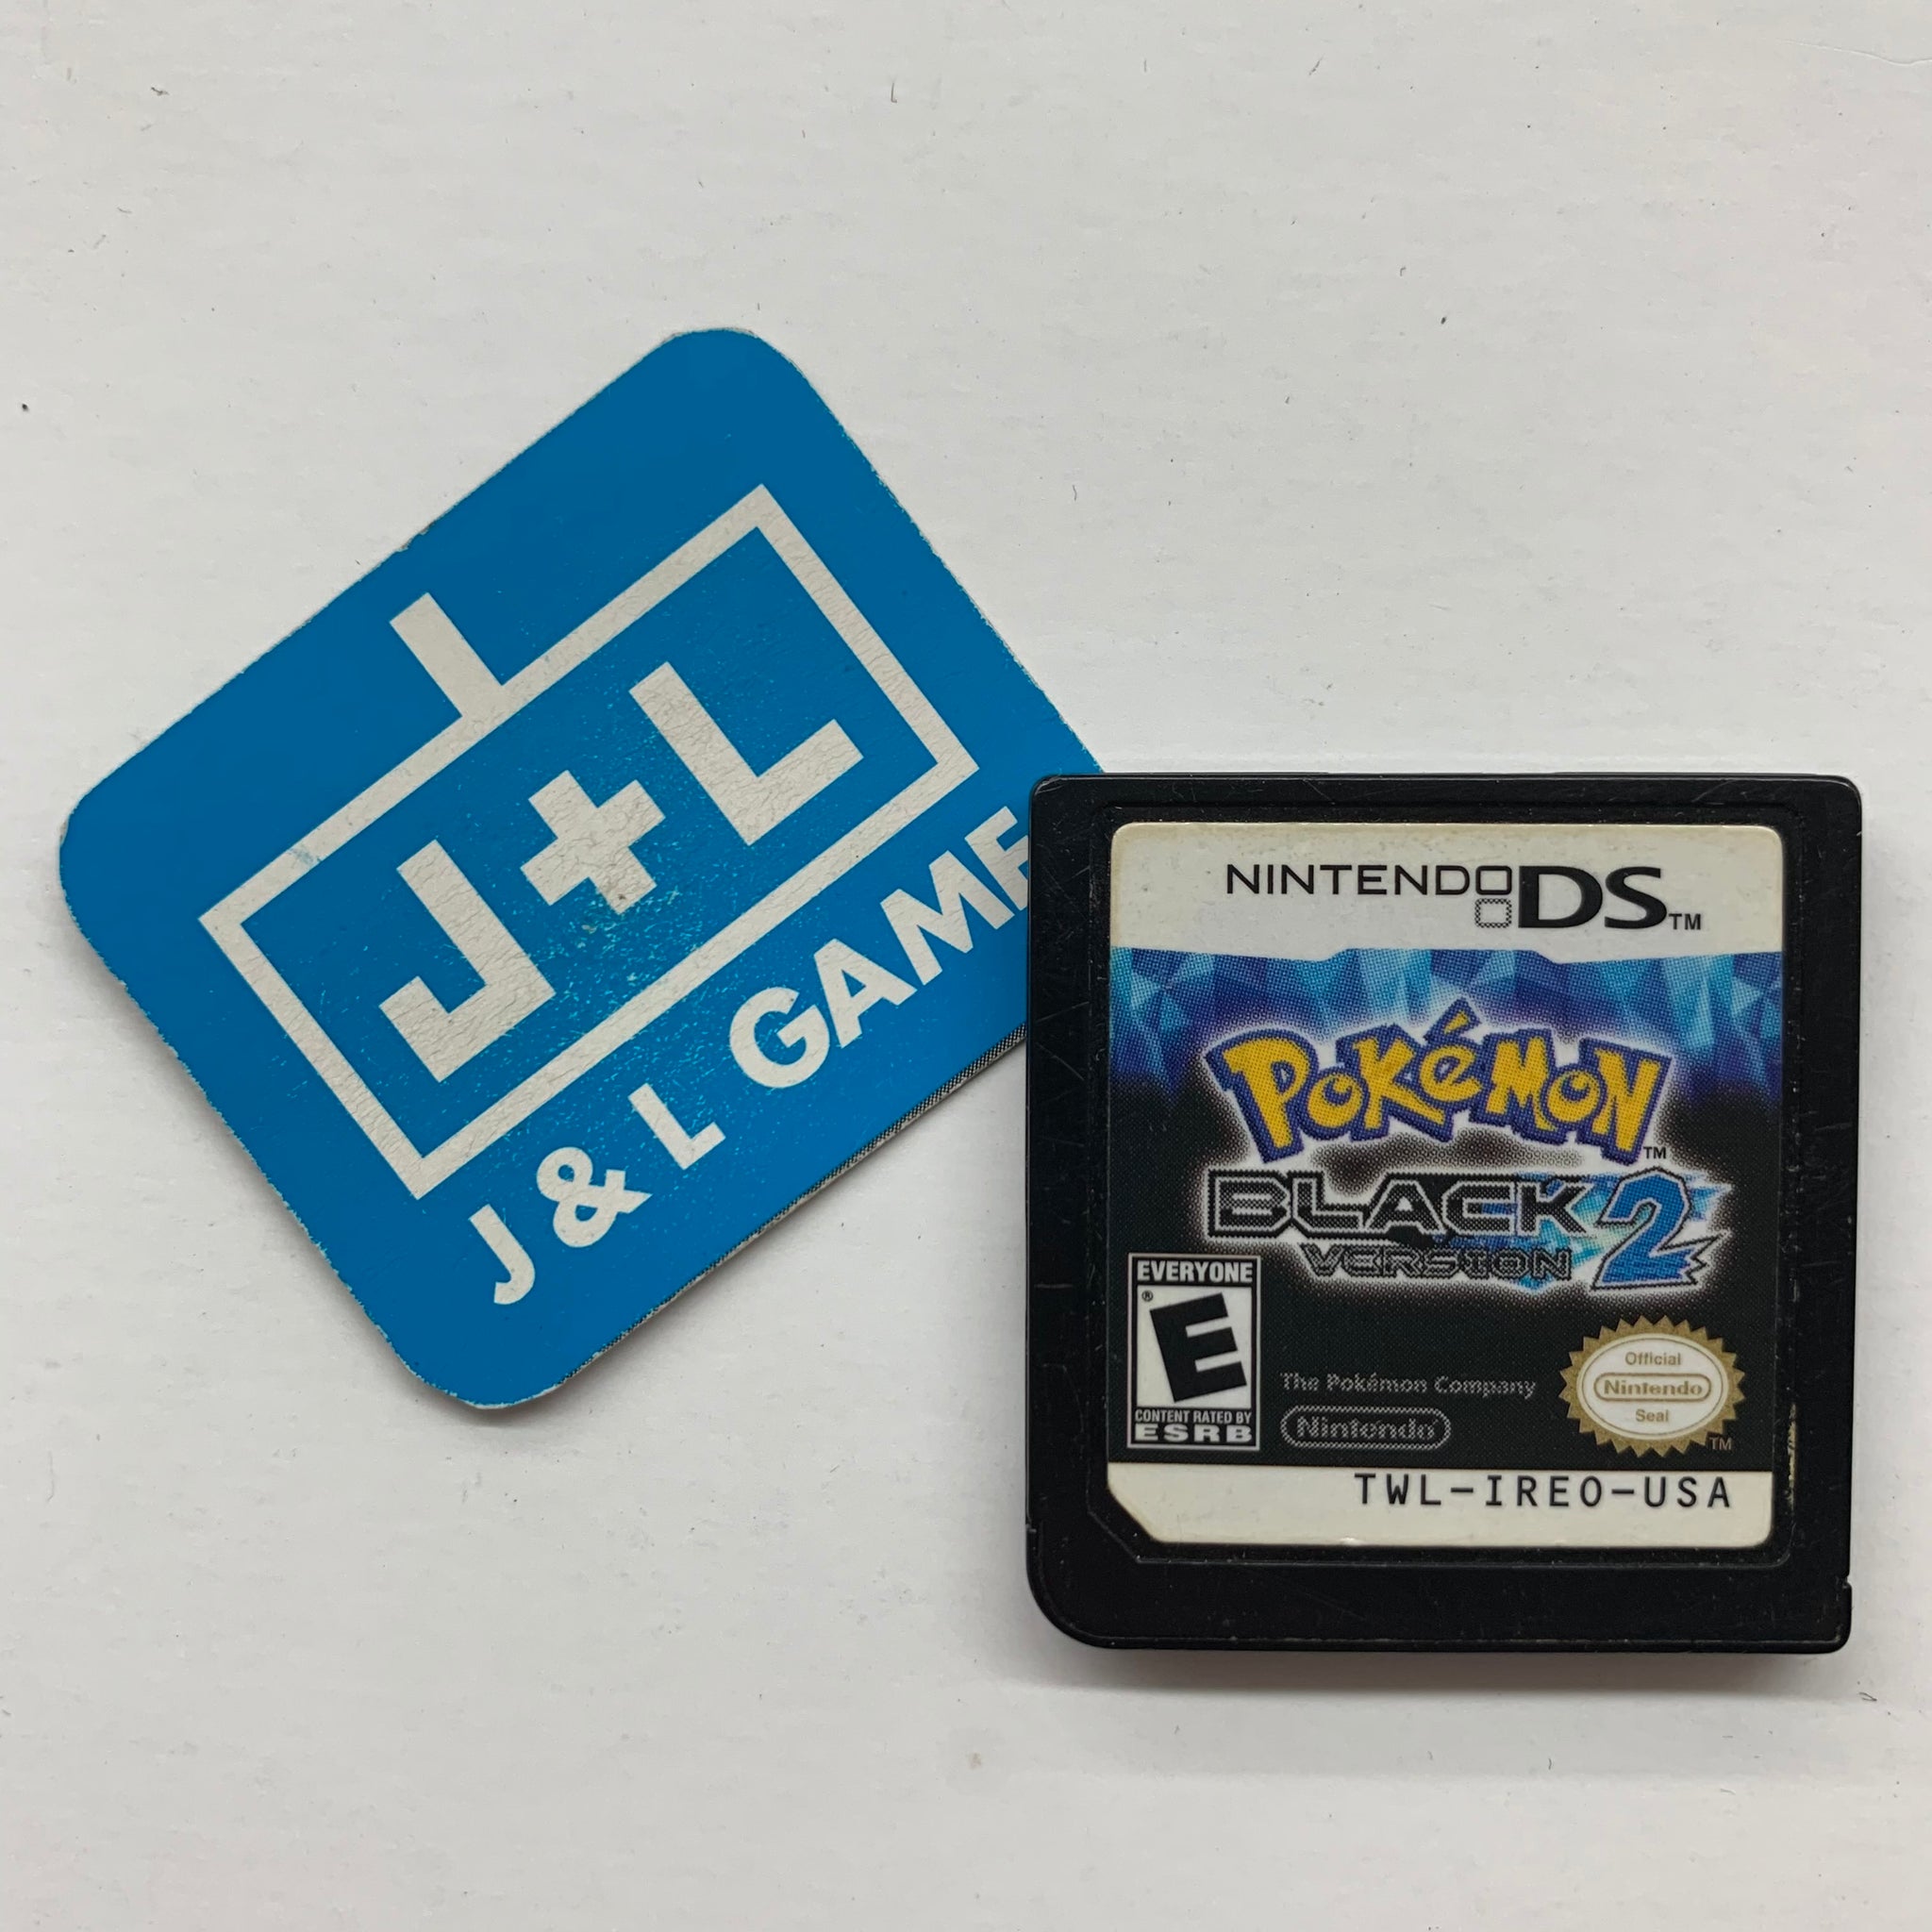 Pokemon Black Version 2 - Nintendo DS